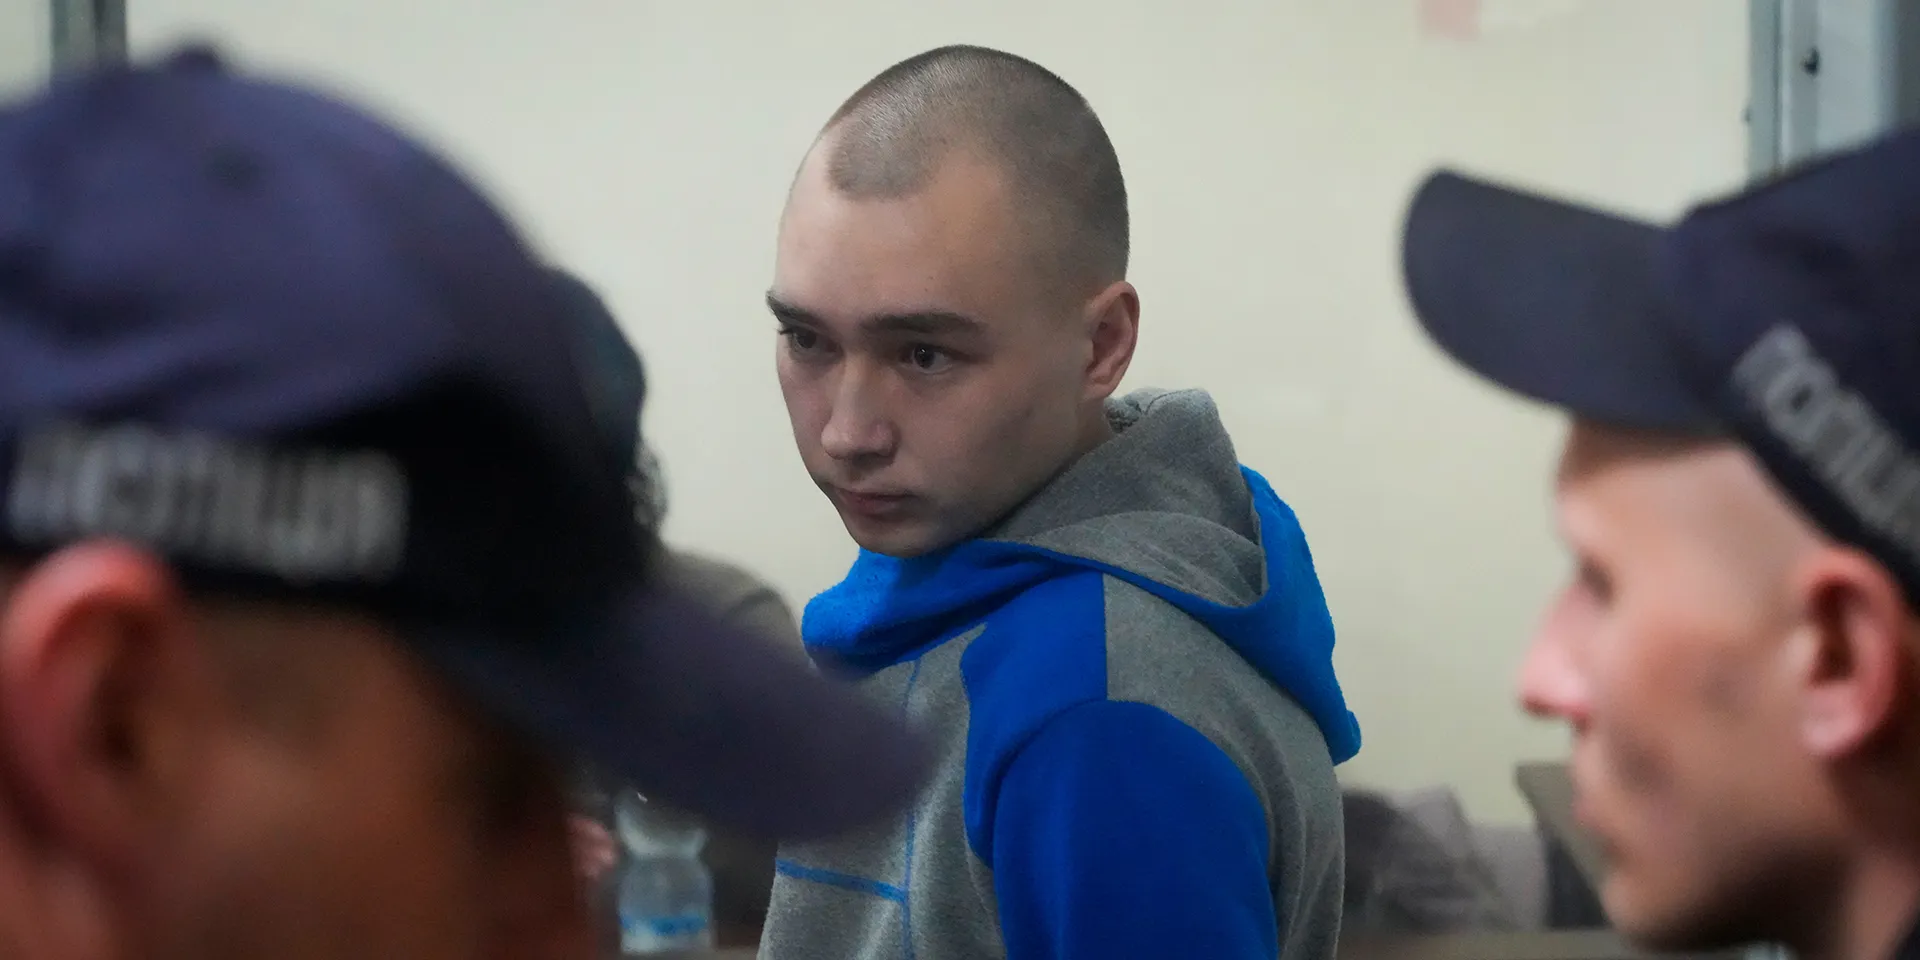 Первый российский солдат признал вину в убийстве мирного жителя